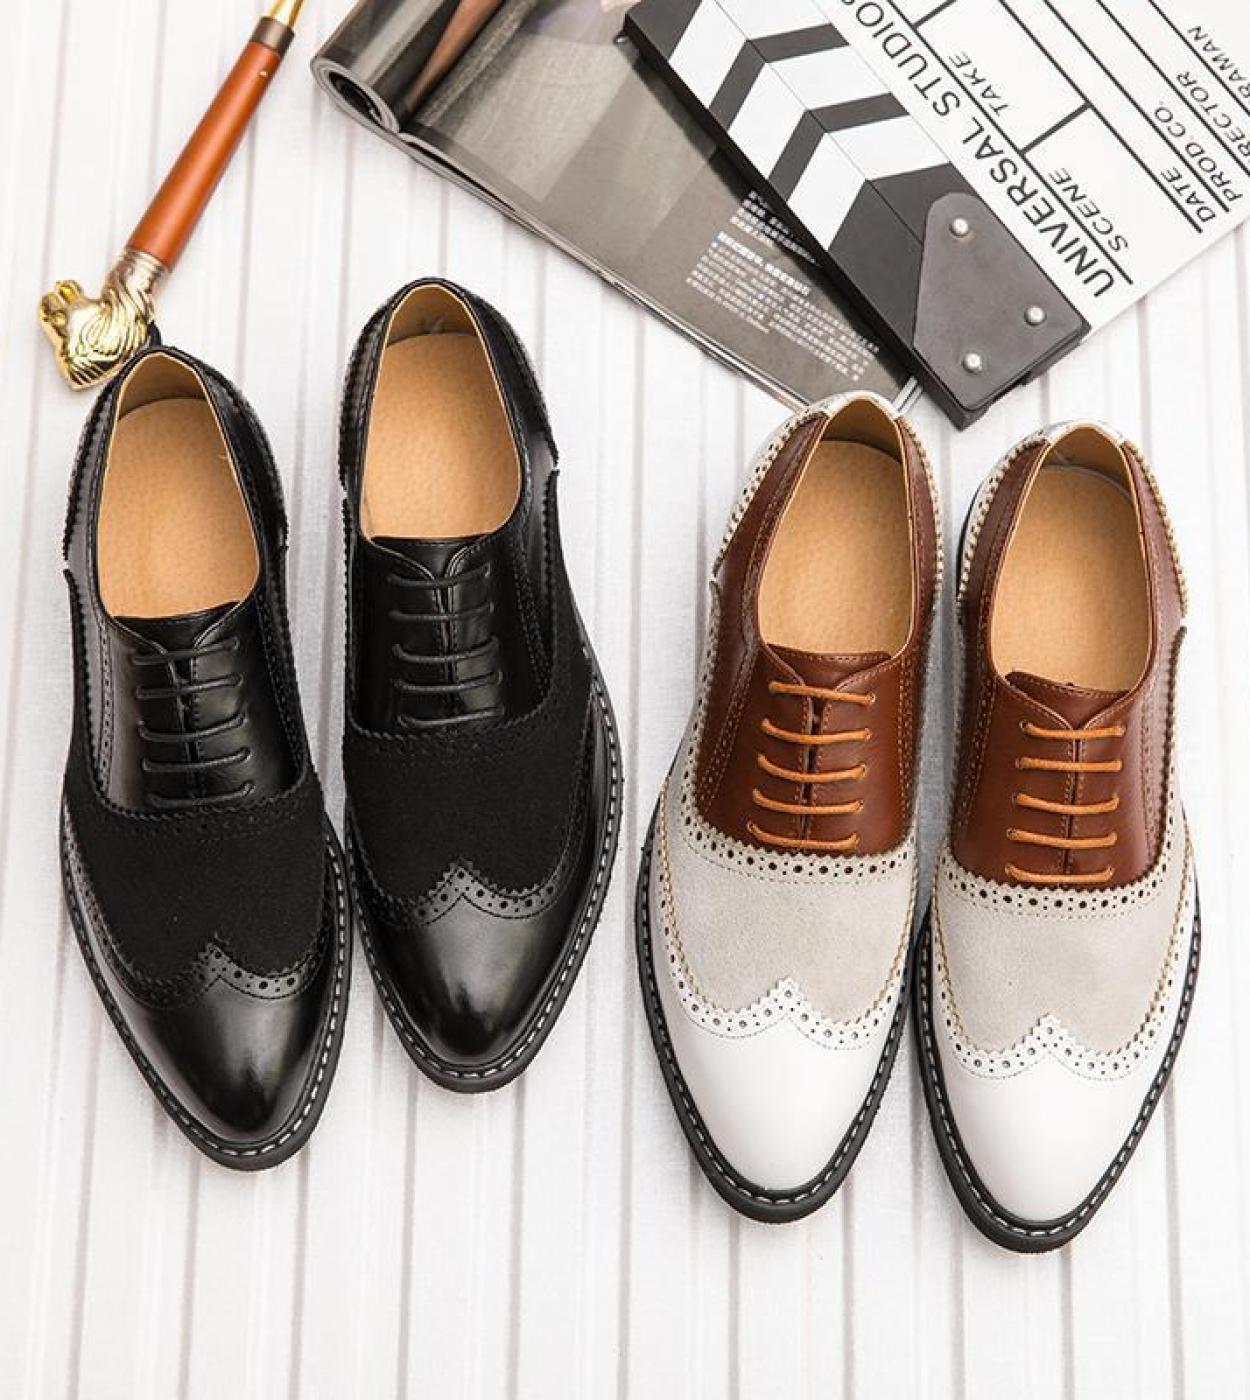 נעלי אוקספורד גברים מזדמנים רטרו zapatos de hombremens pu נעלי עור באיכות גבוהה נעלי שמלת אופנה הכי חדשה לגברים